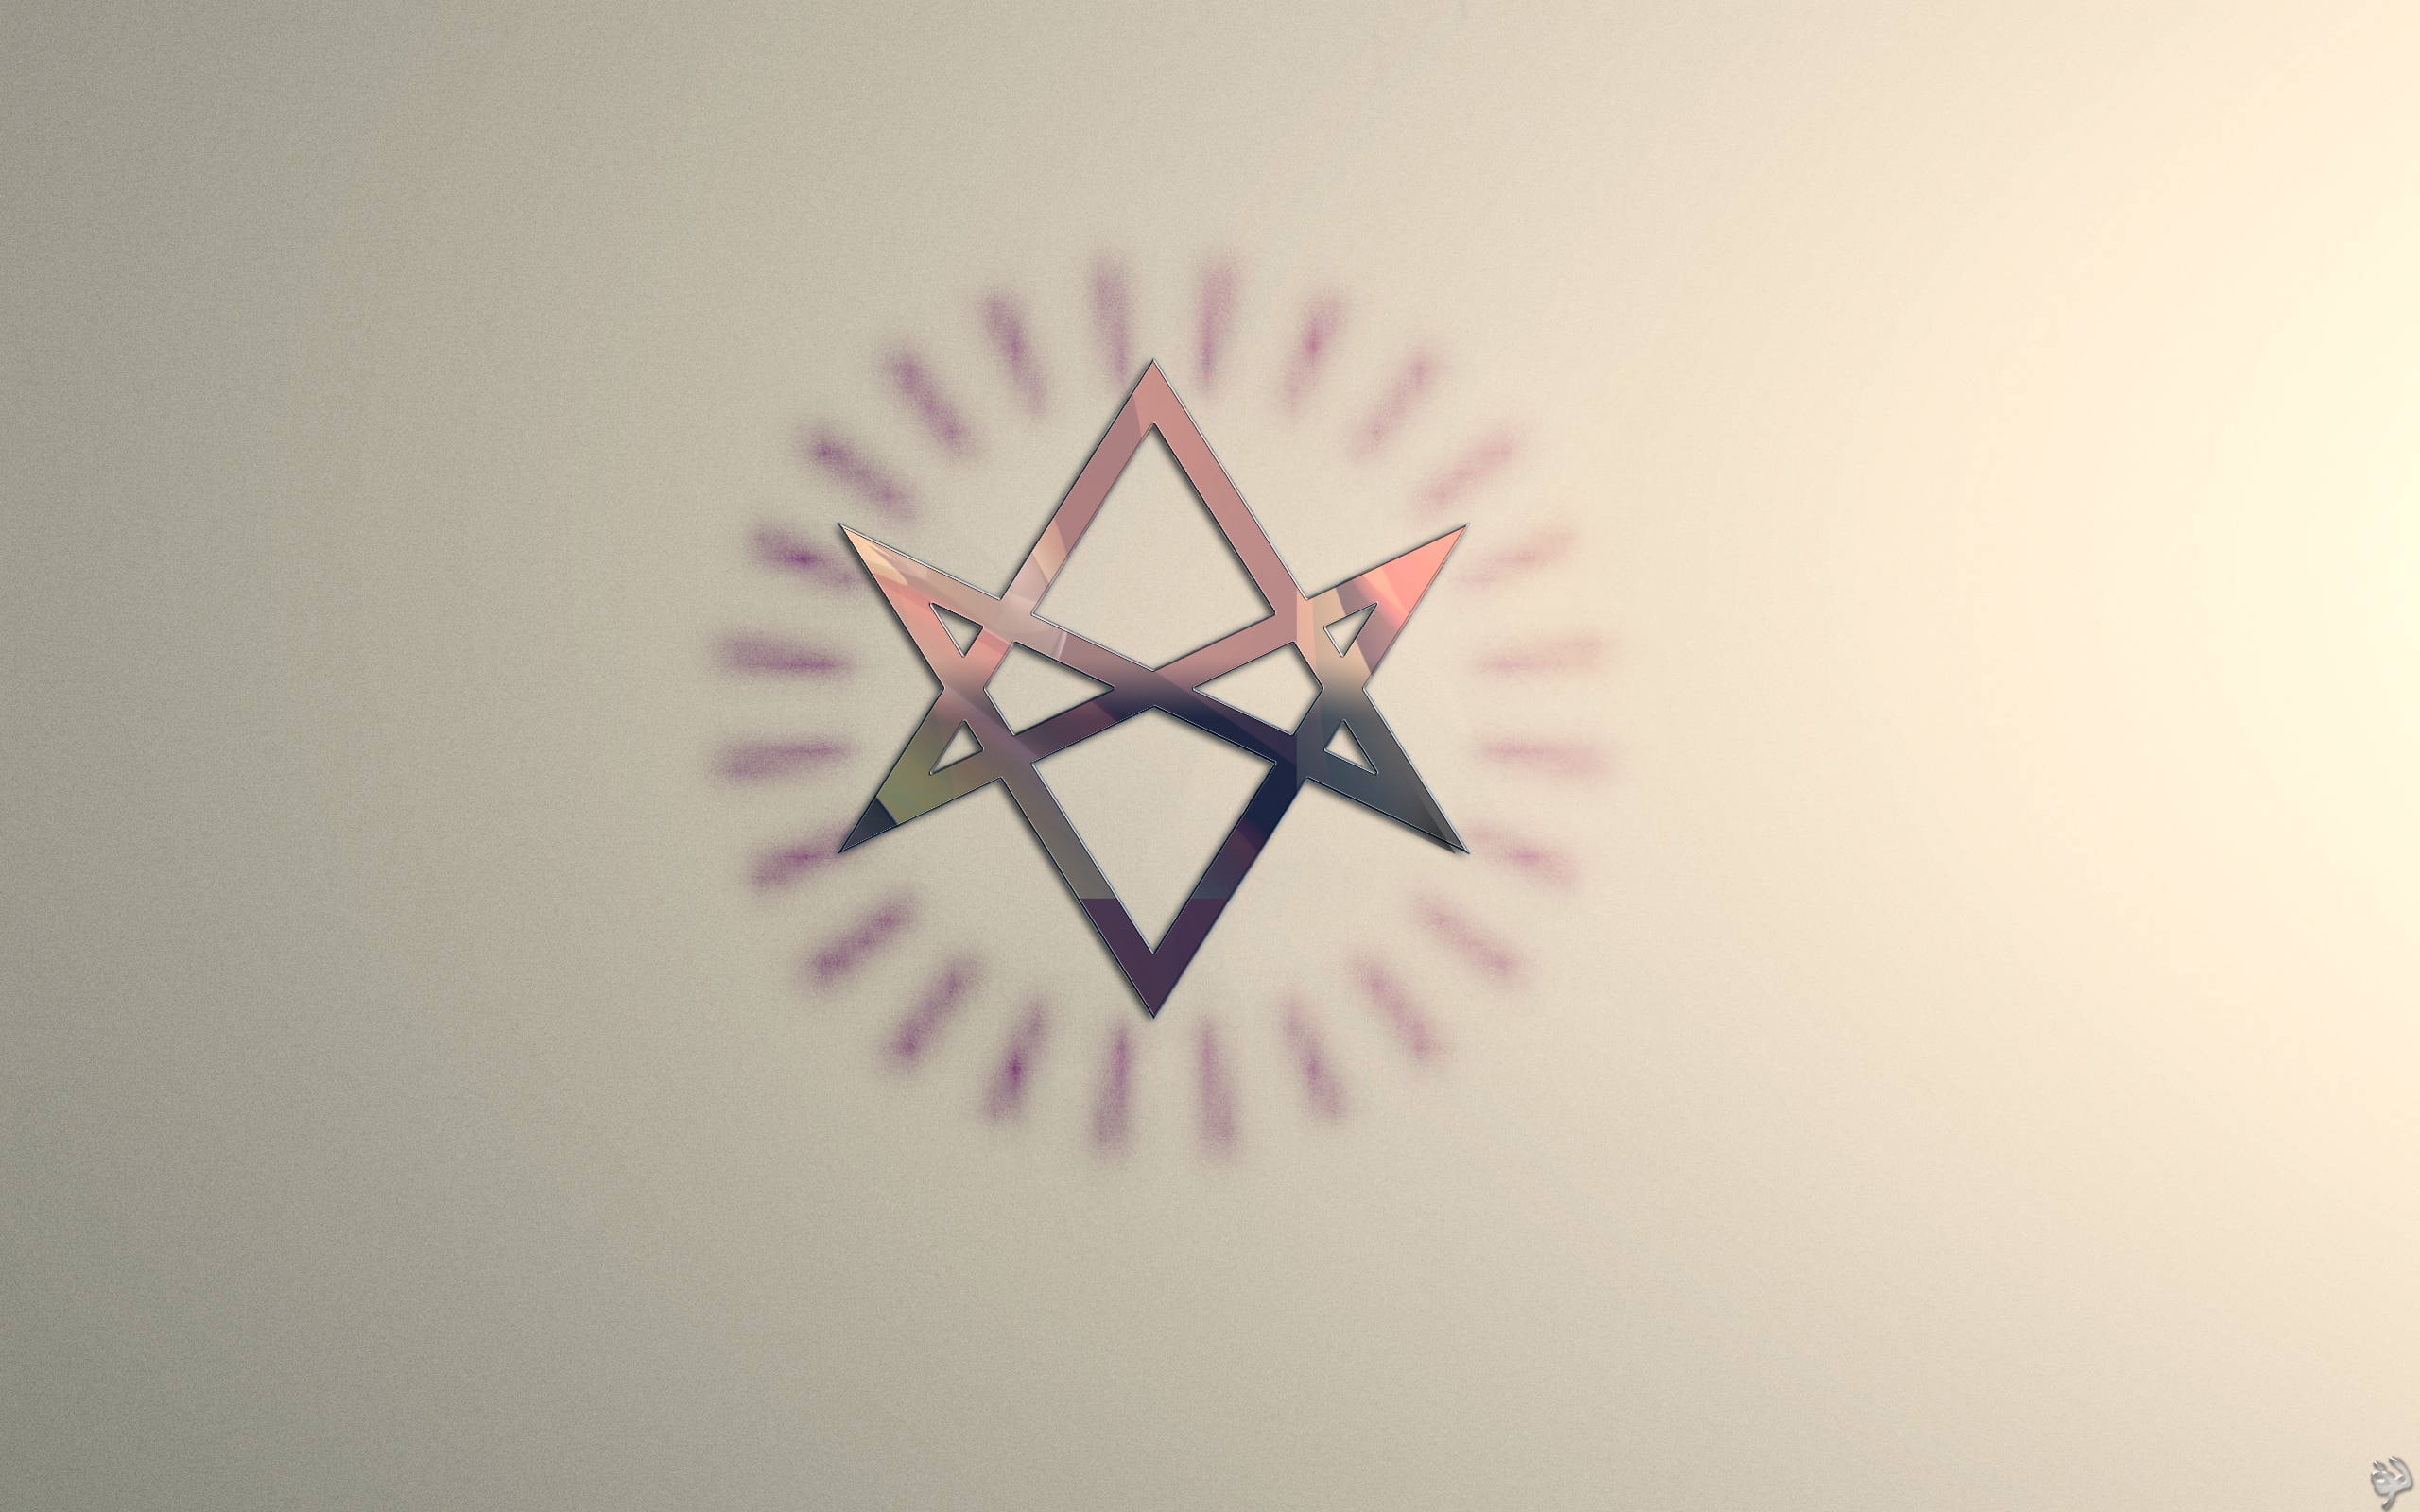 purple 6-pointed star sticker, Unicursal Hexagram, circle, minimalism, white